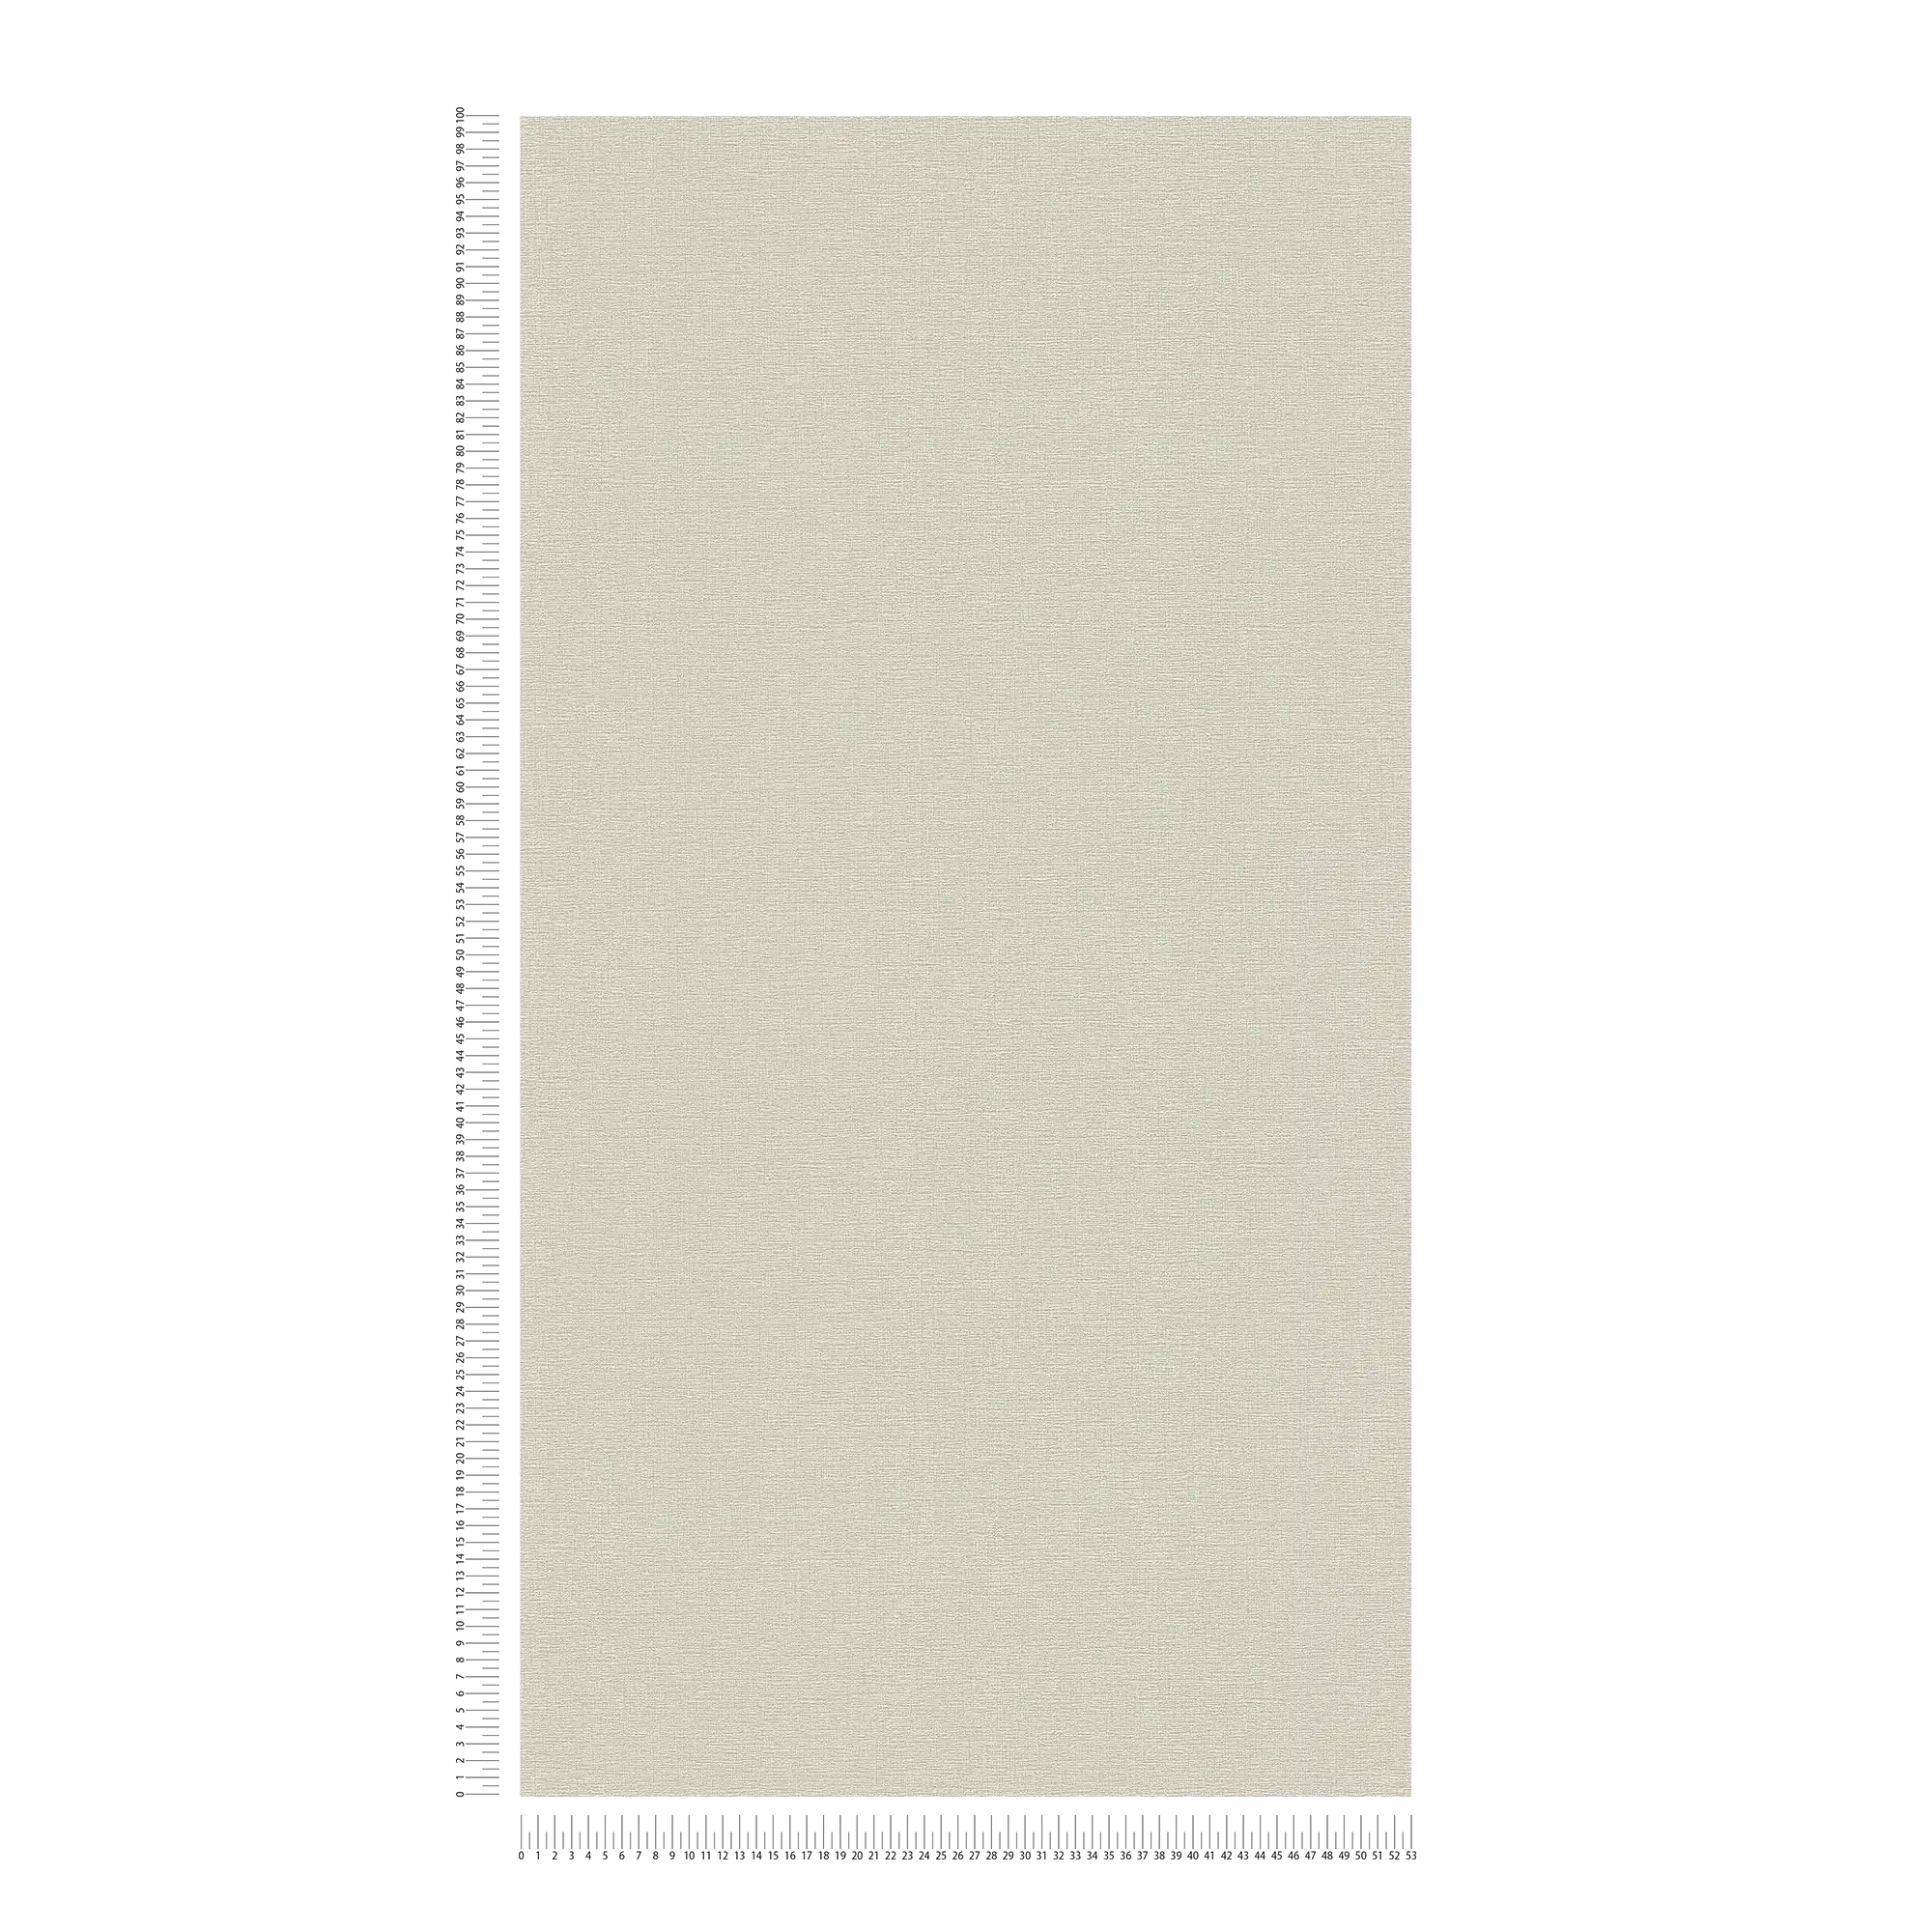             Carta da parati beige-grigia con texture tessile in look vintage
        